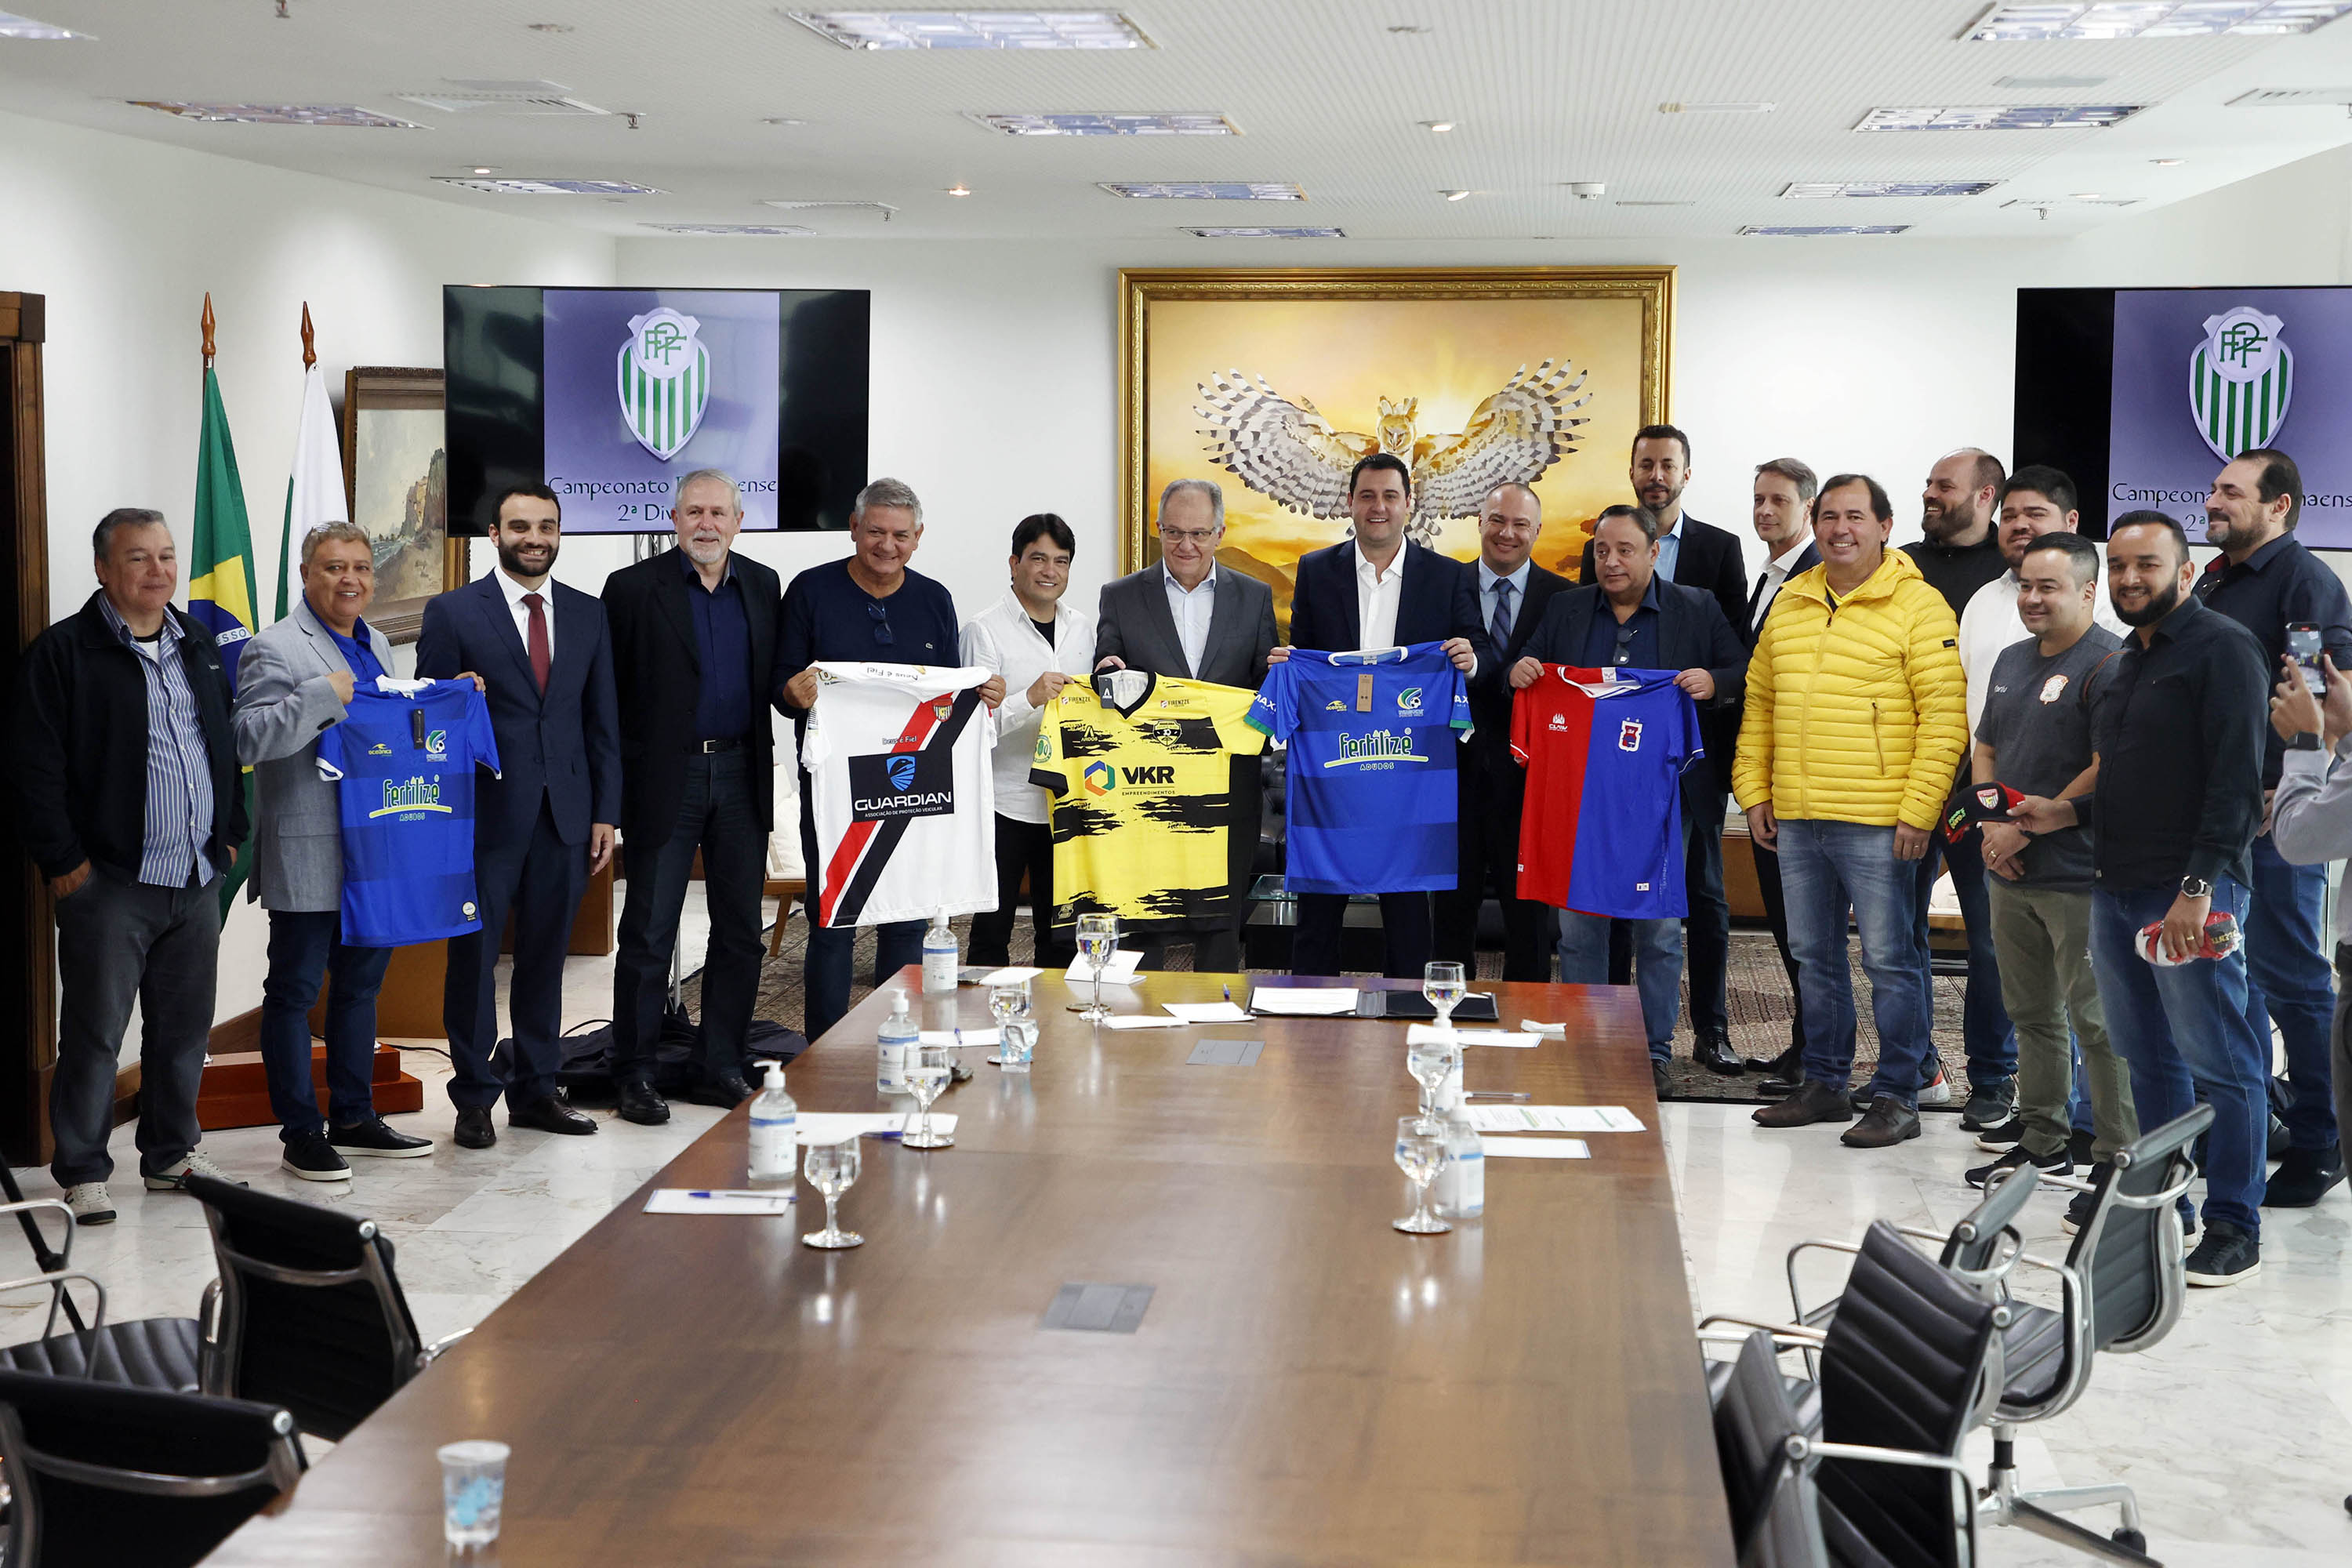 A TV Paraná Turismo e a Federação Paranaense de Futebol (FPF) fecharam um acordo para a transmissão do campeonato, anunciado nesta quinta-feira (27) pelo governador Carlos Massa Ratinho Junior, com a 